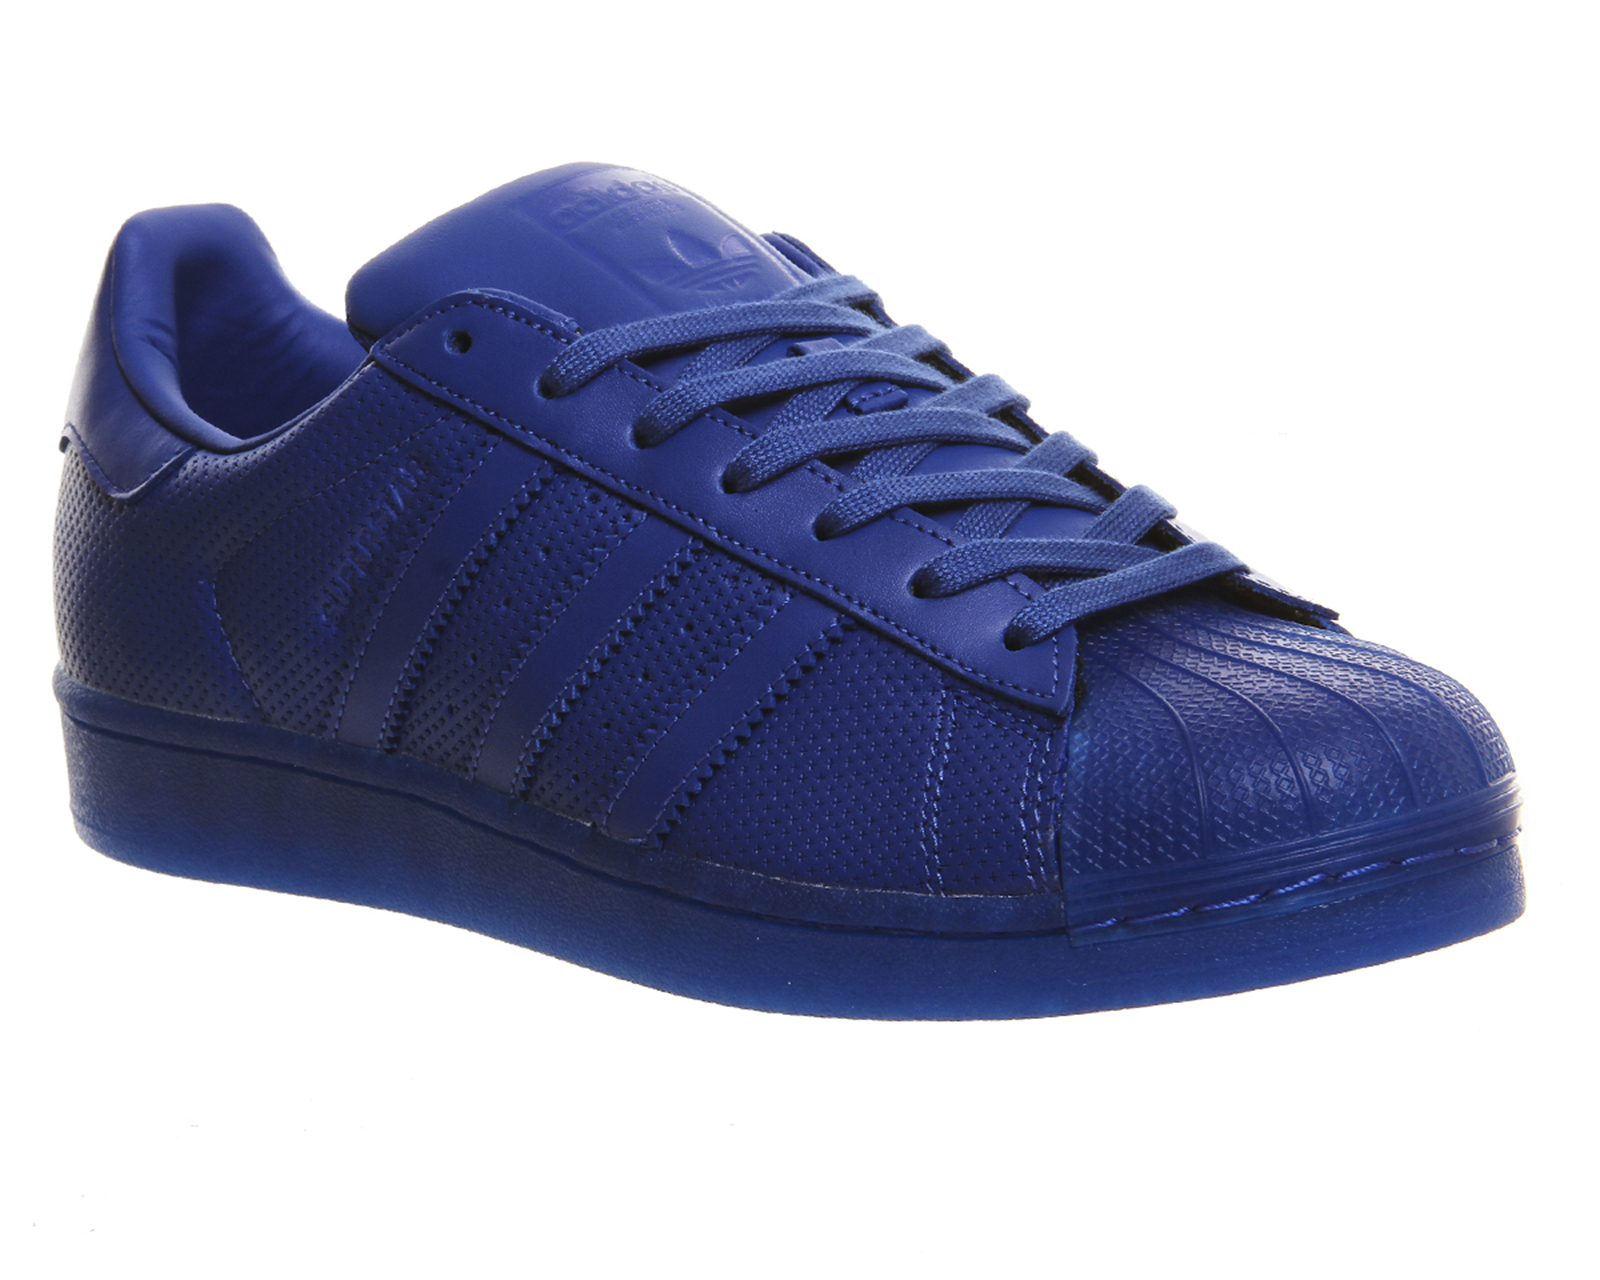 Adidas originals Superstar 1 in Blue - Save 34% | Lyst